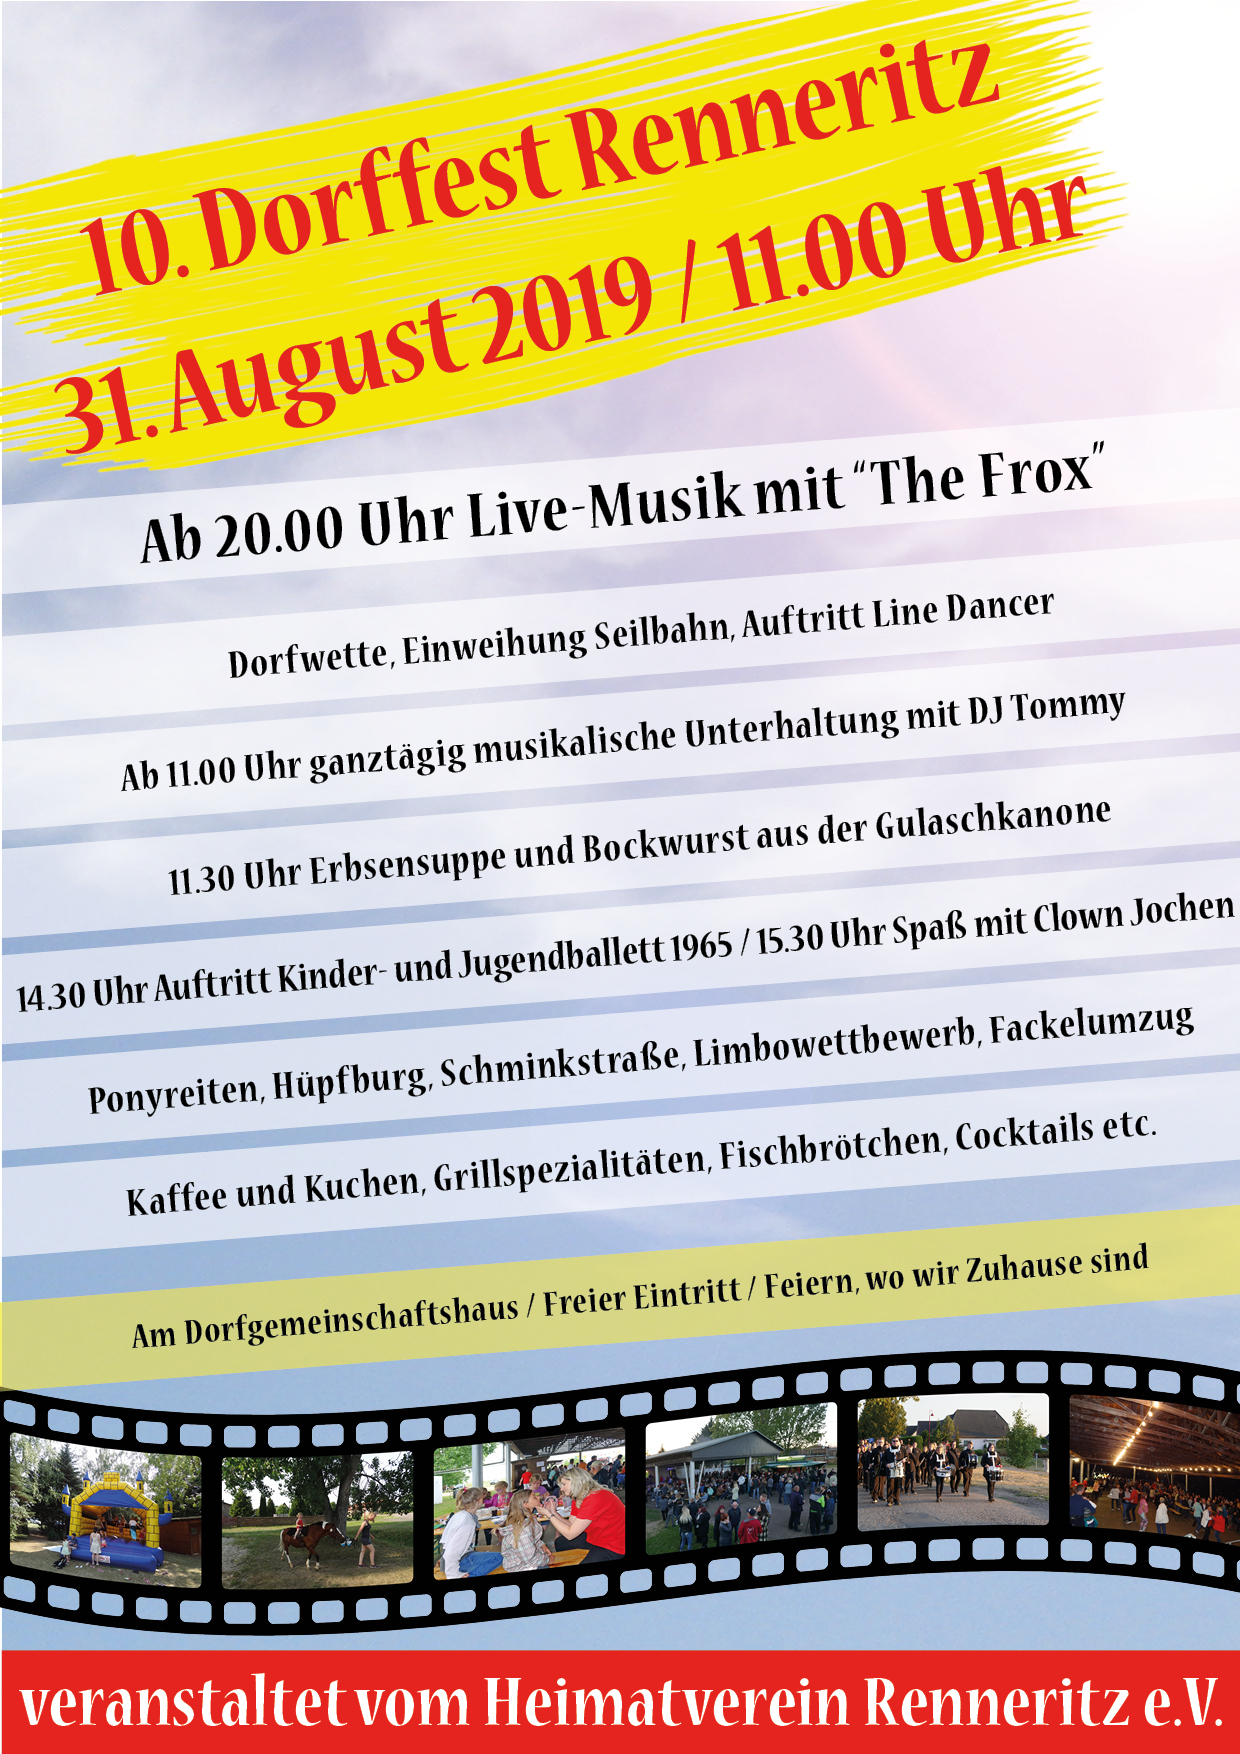 Dorffest Renneritz 2019